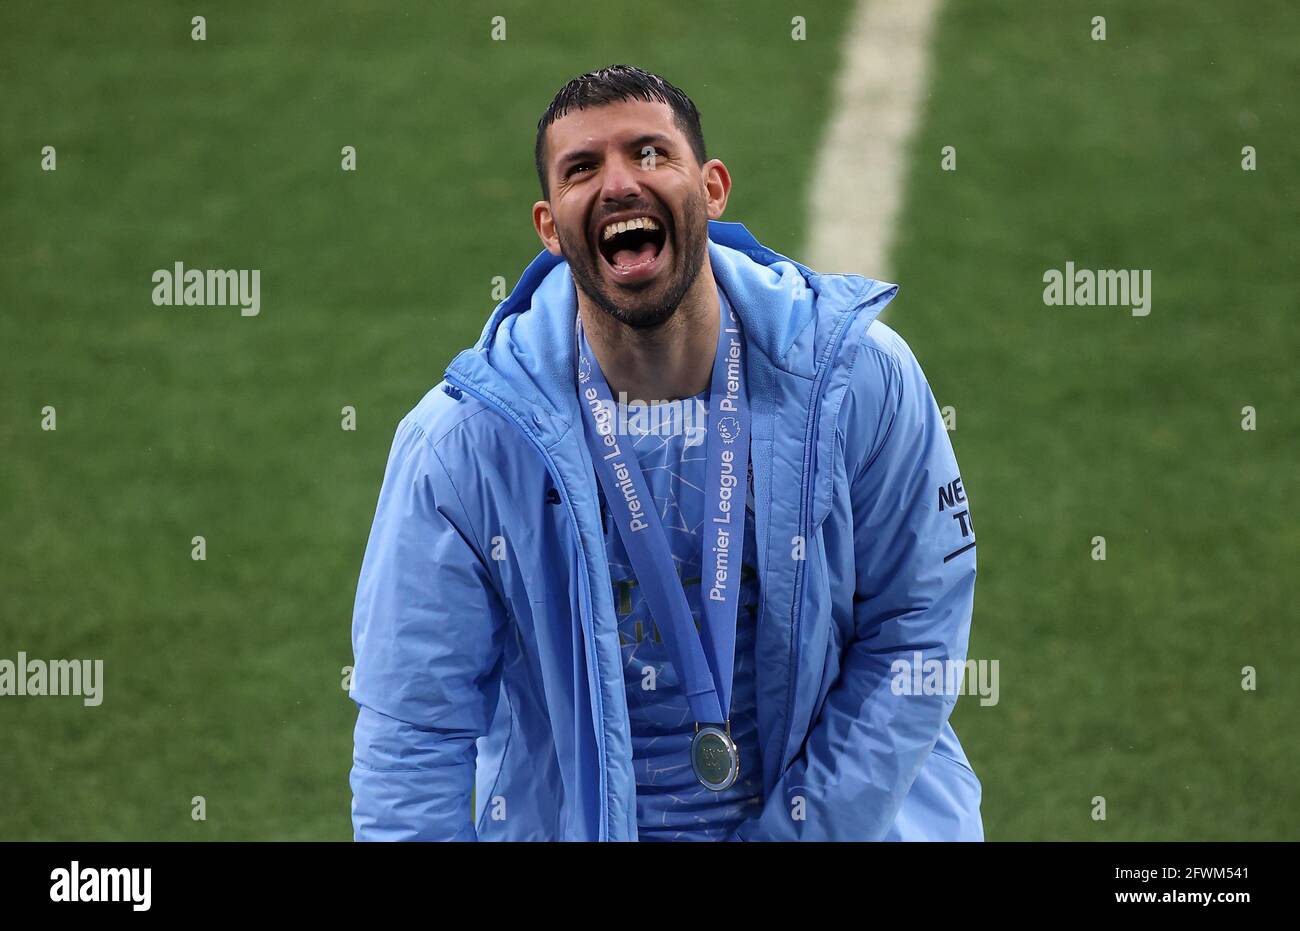 Sergio Aguero di Manchester City festeggia dopo la partita della Premier League all'Etihad Stadium di Manchester. Data immagine: Domenica 23 maggio 2021. Foto Stock